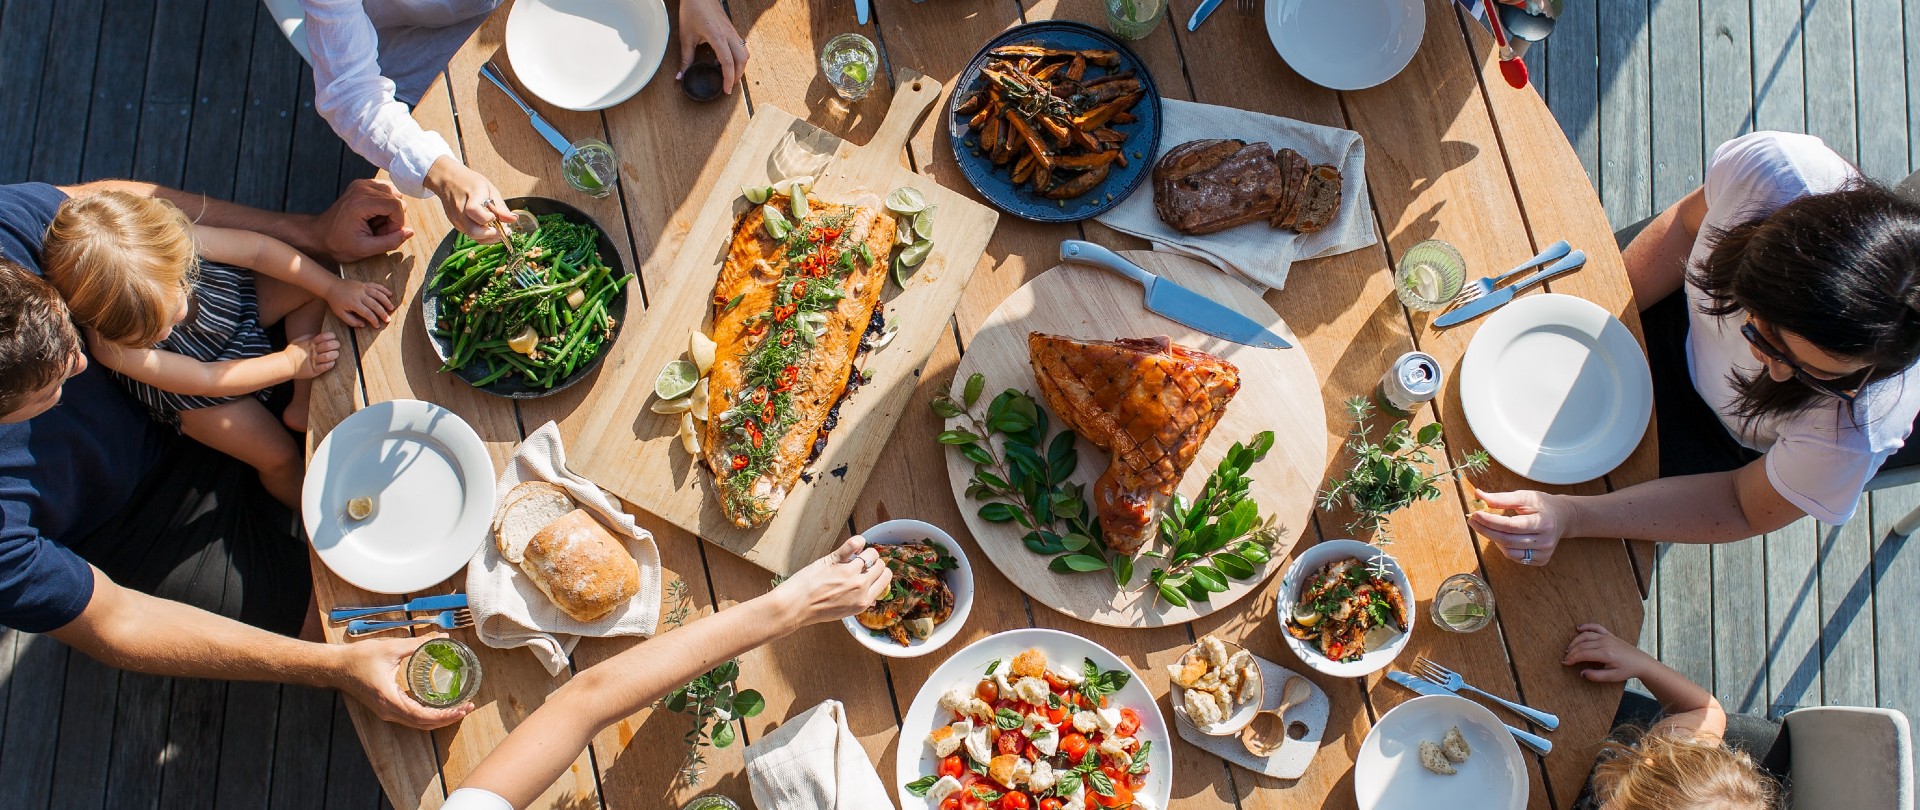 5 tips om goedkoop uit eten te gaan- ga uit eten tijdens de lunch